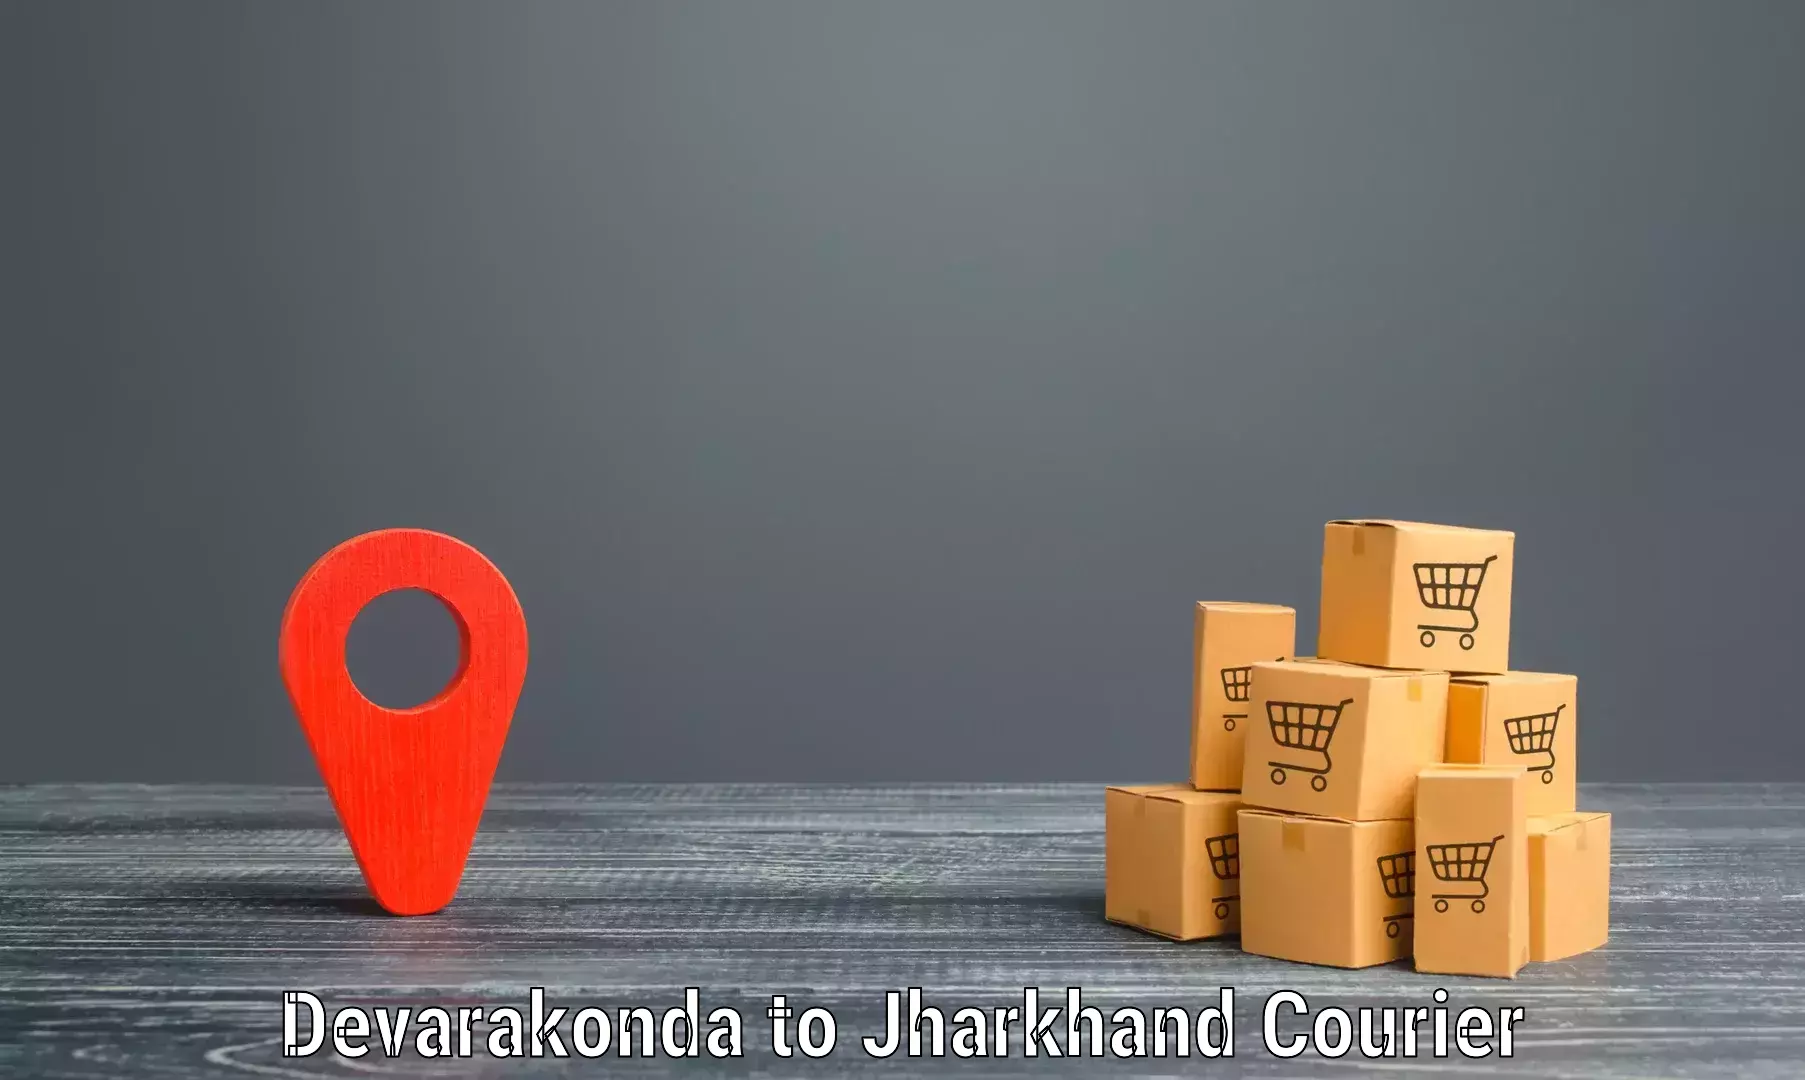 Global logistics network Devarakonda to Govindpur